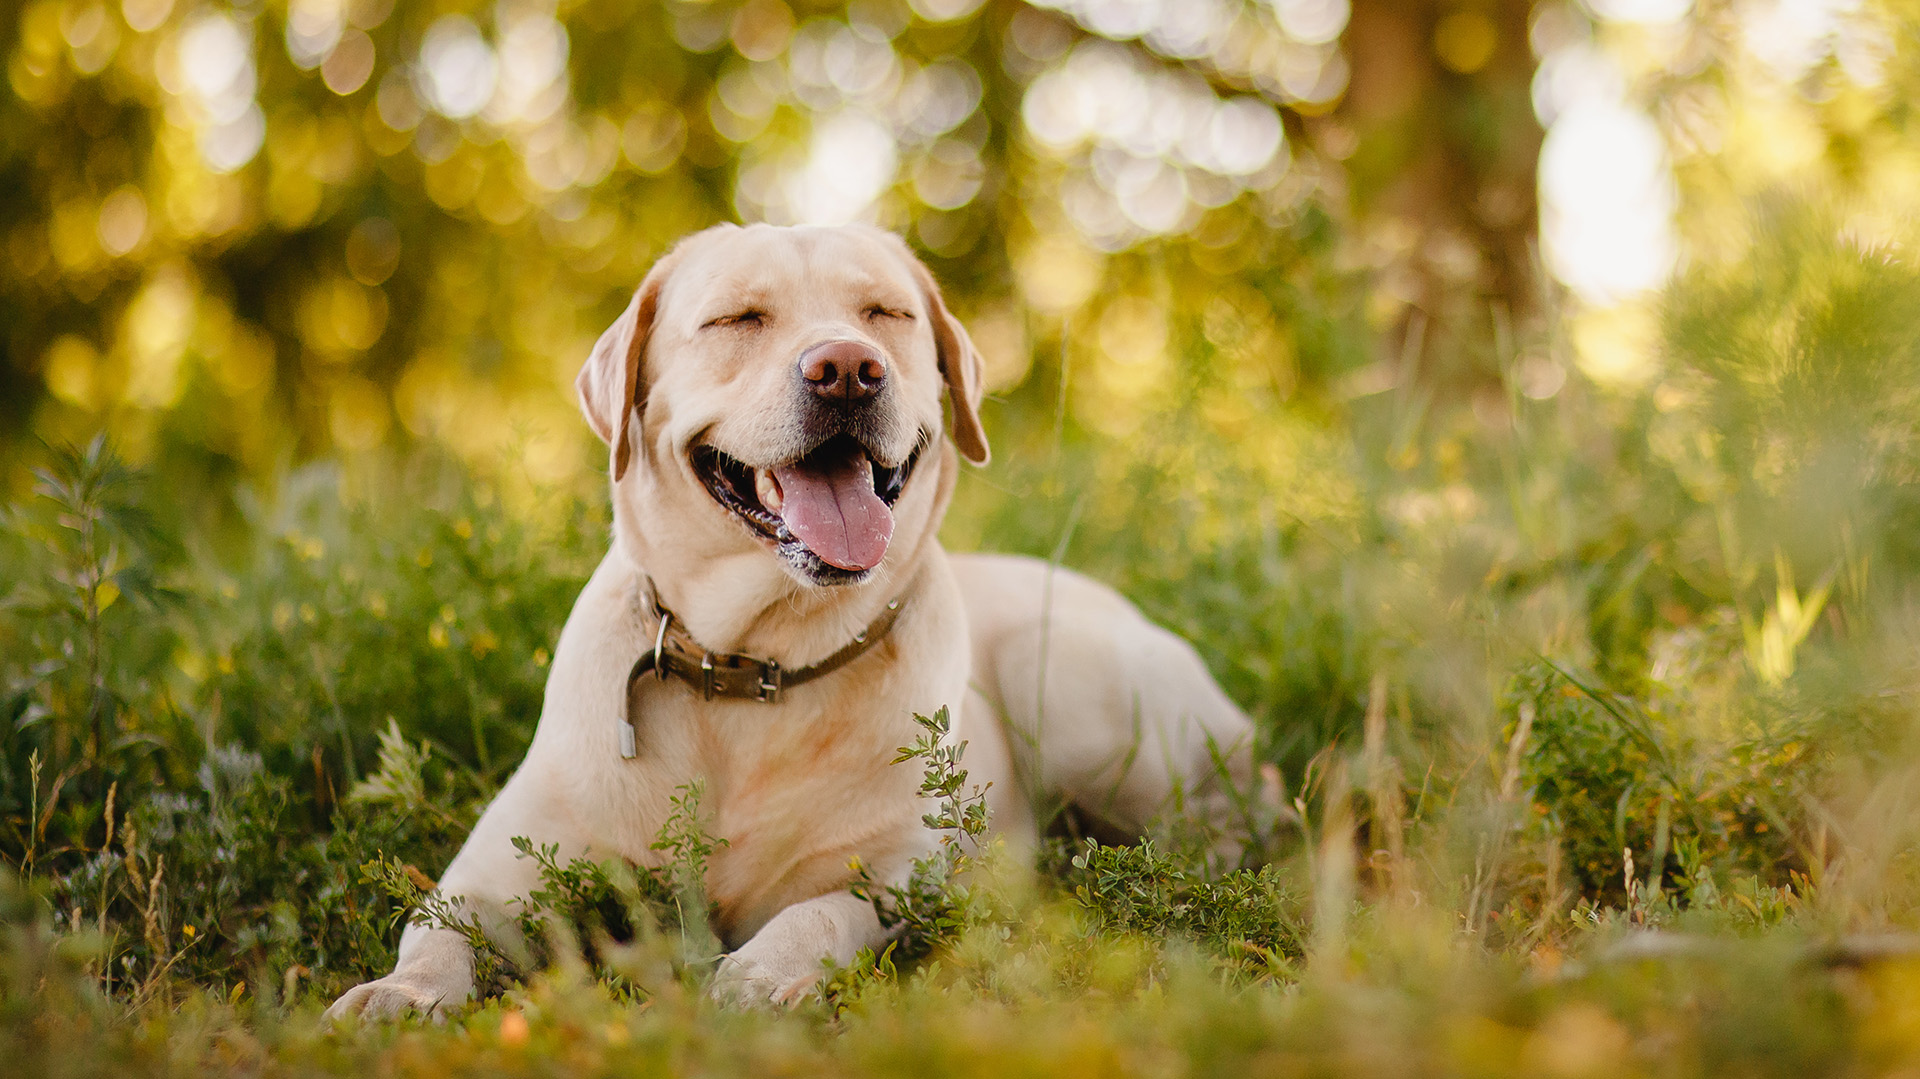 Algunos de los trabajos comunes de un laboratorio es ser un perro guía (Shutterstock.com)